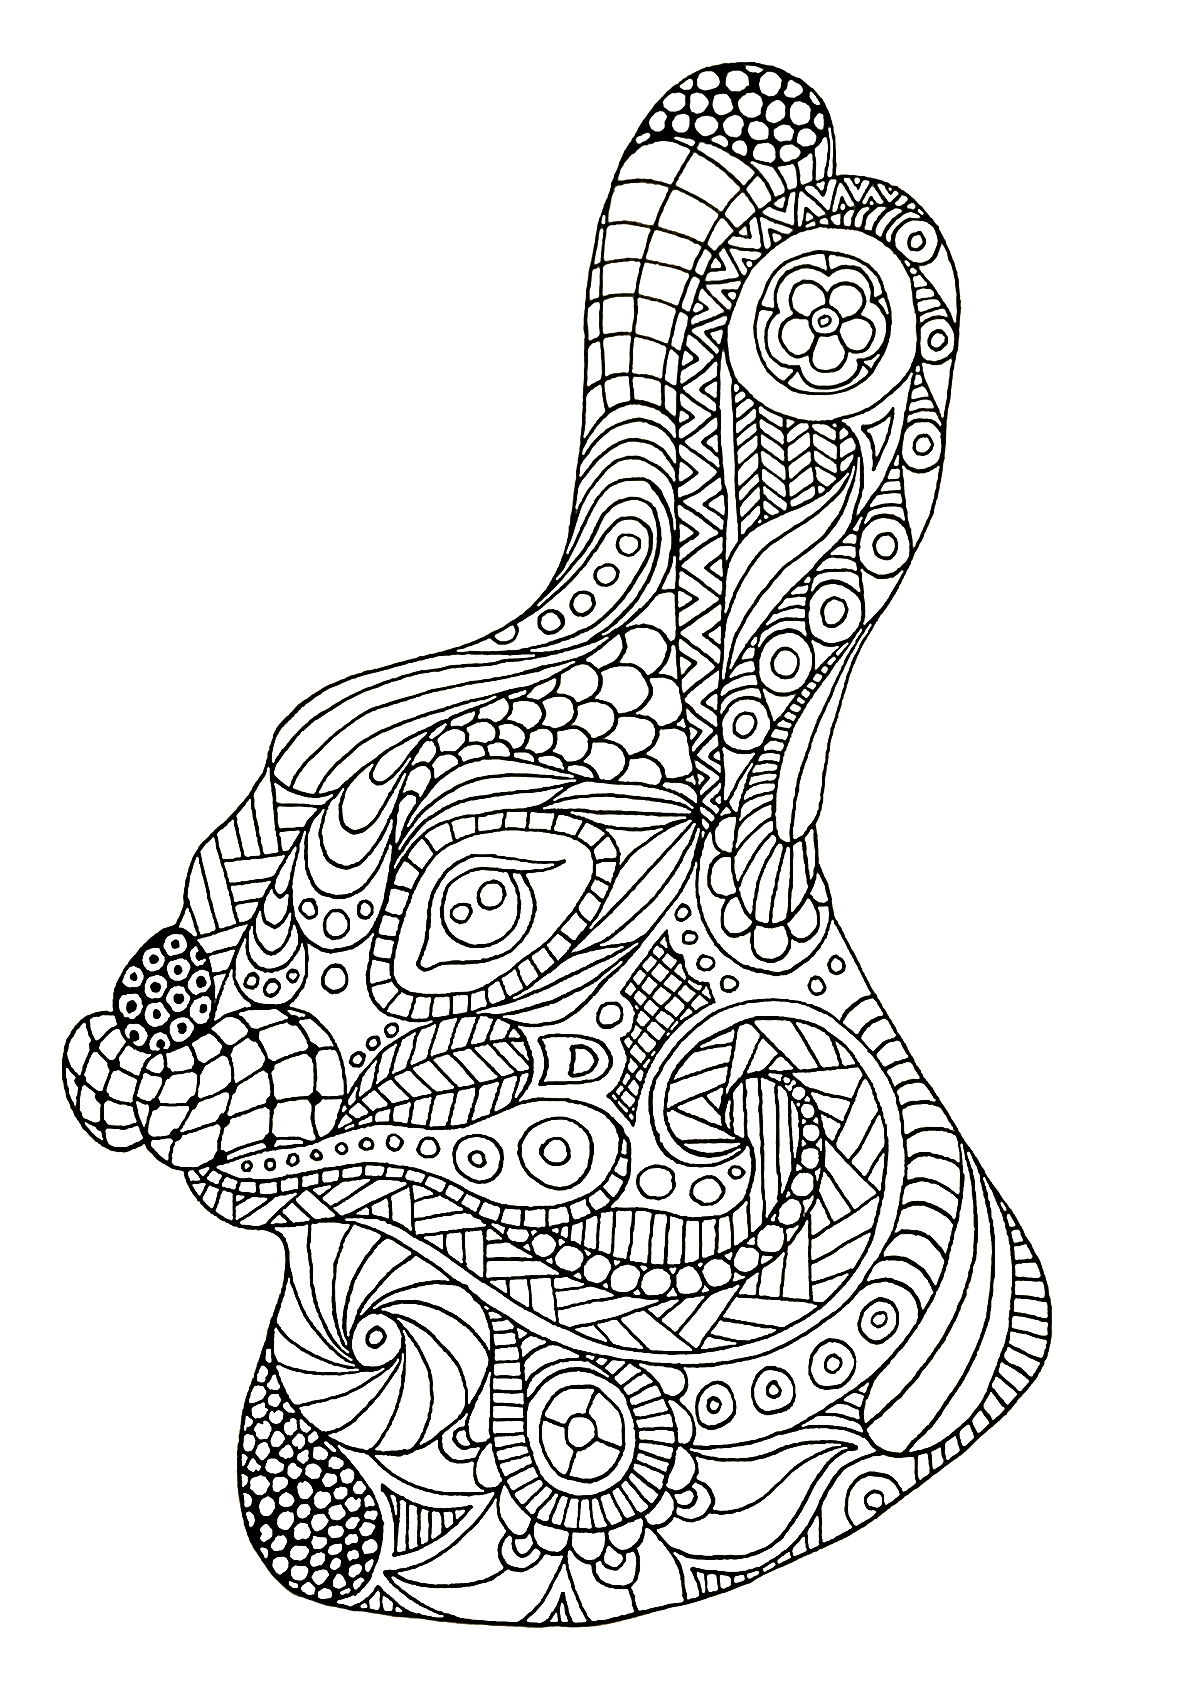 Cabeça de coelho desenhada com o estilo Zentangle